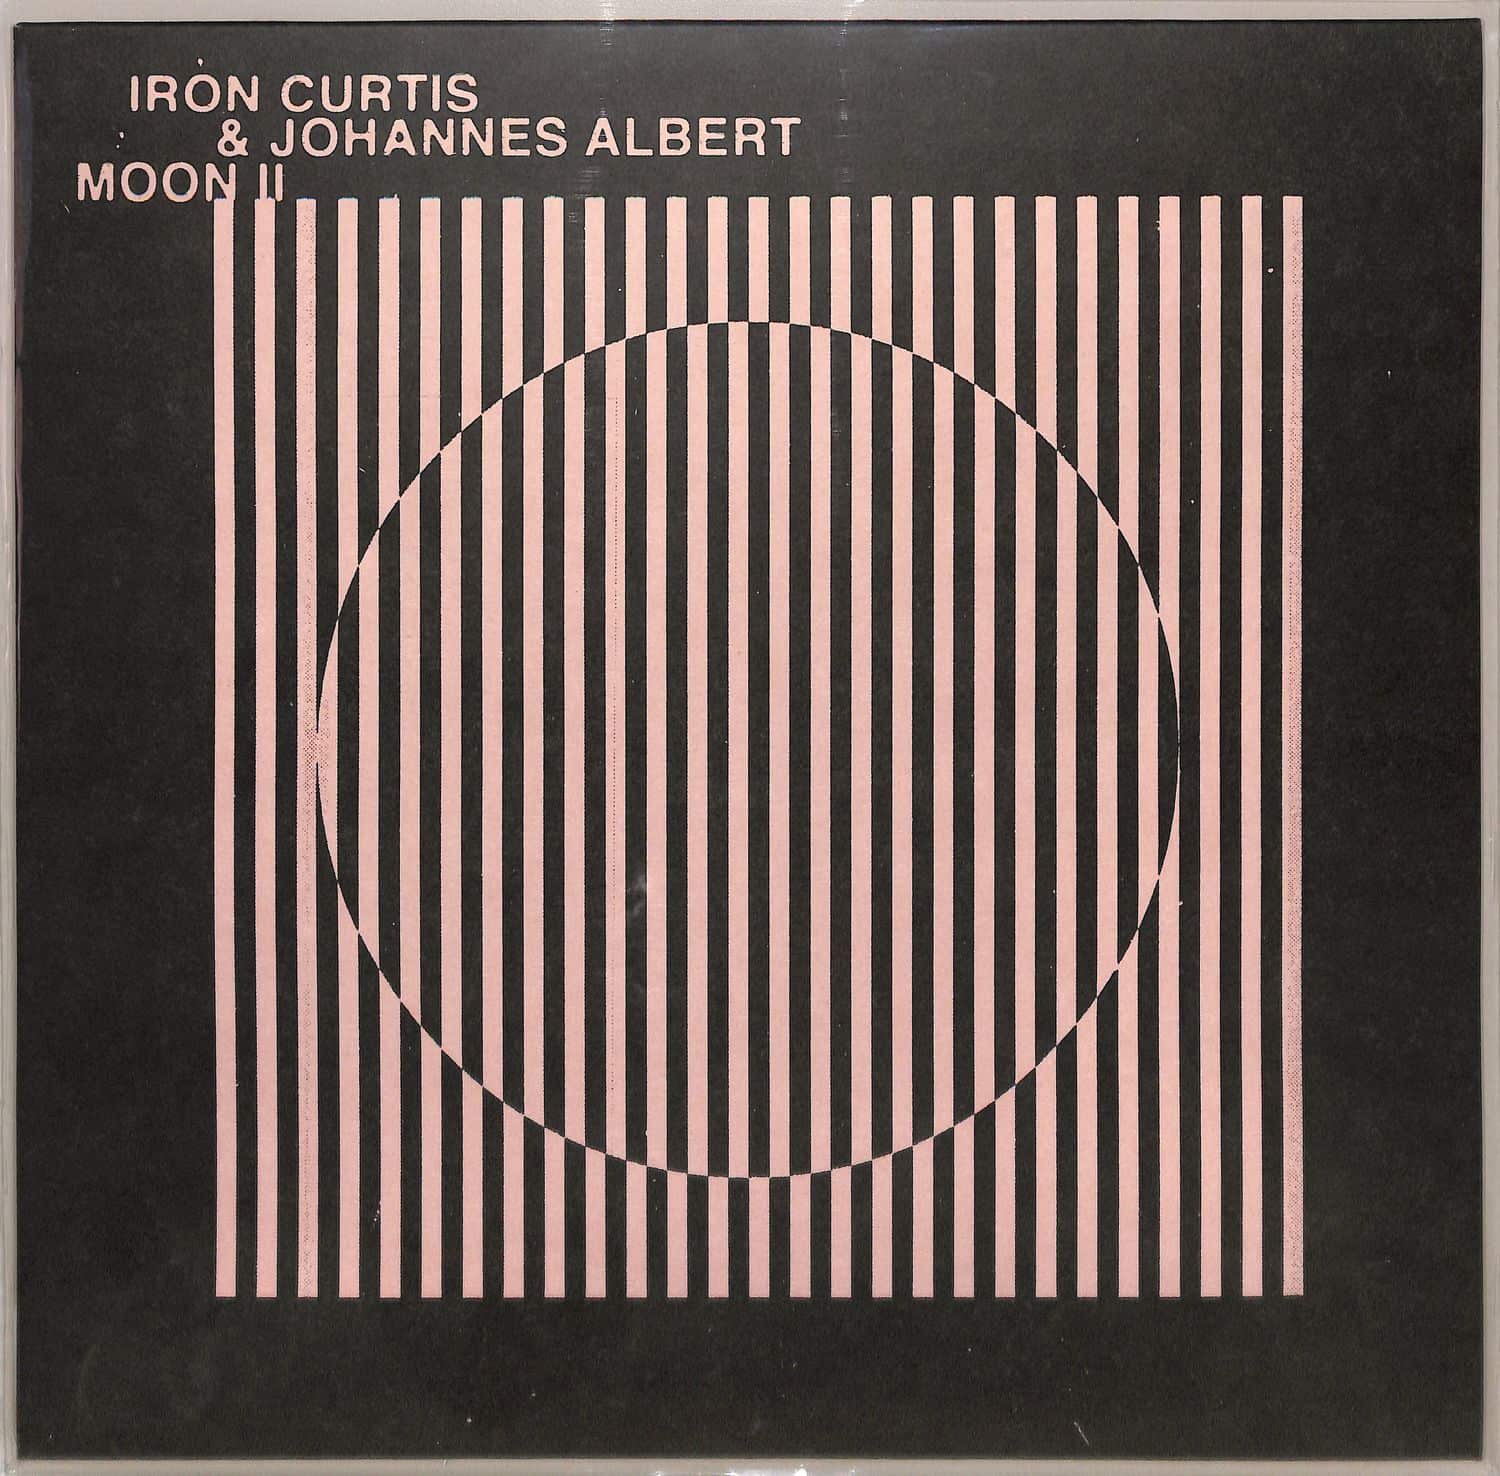 Iron Curtis & Johannes Albert - MOON II 